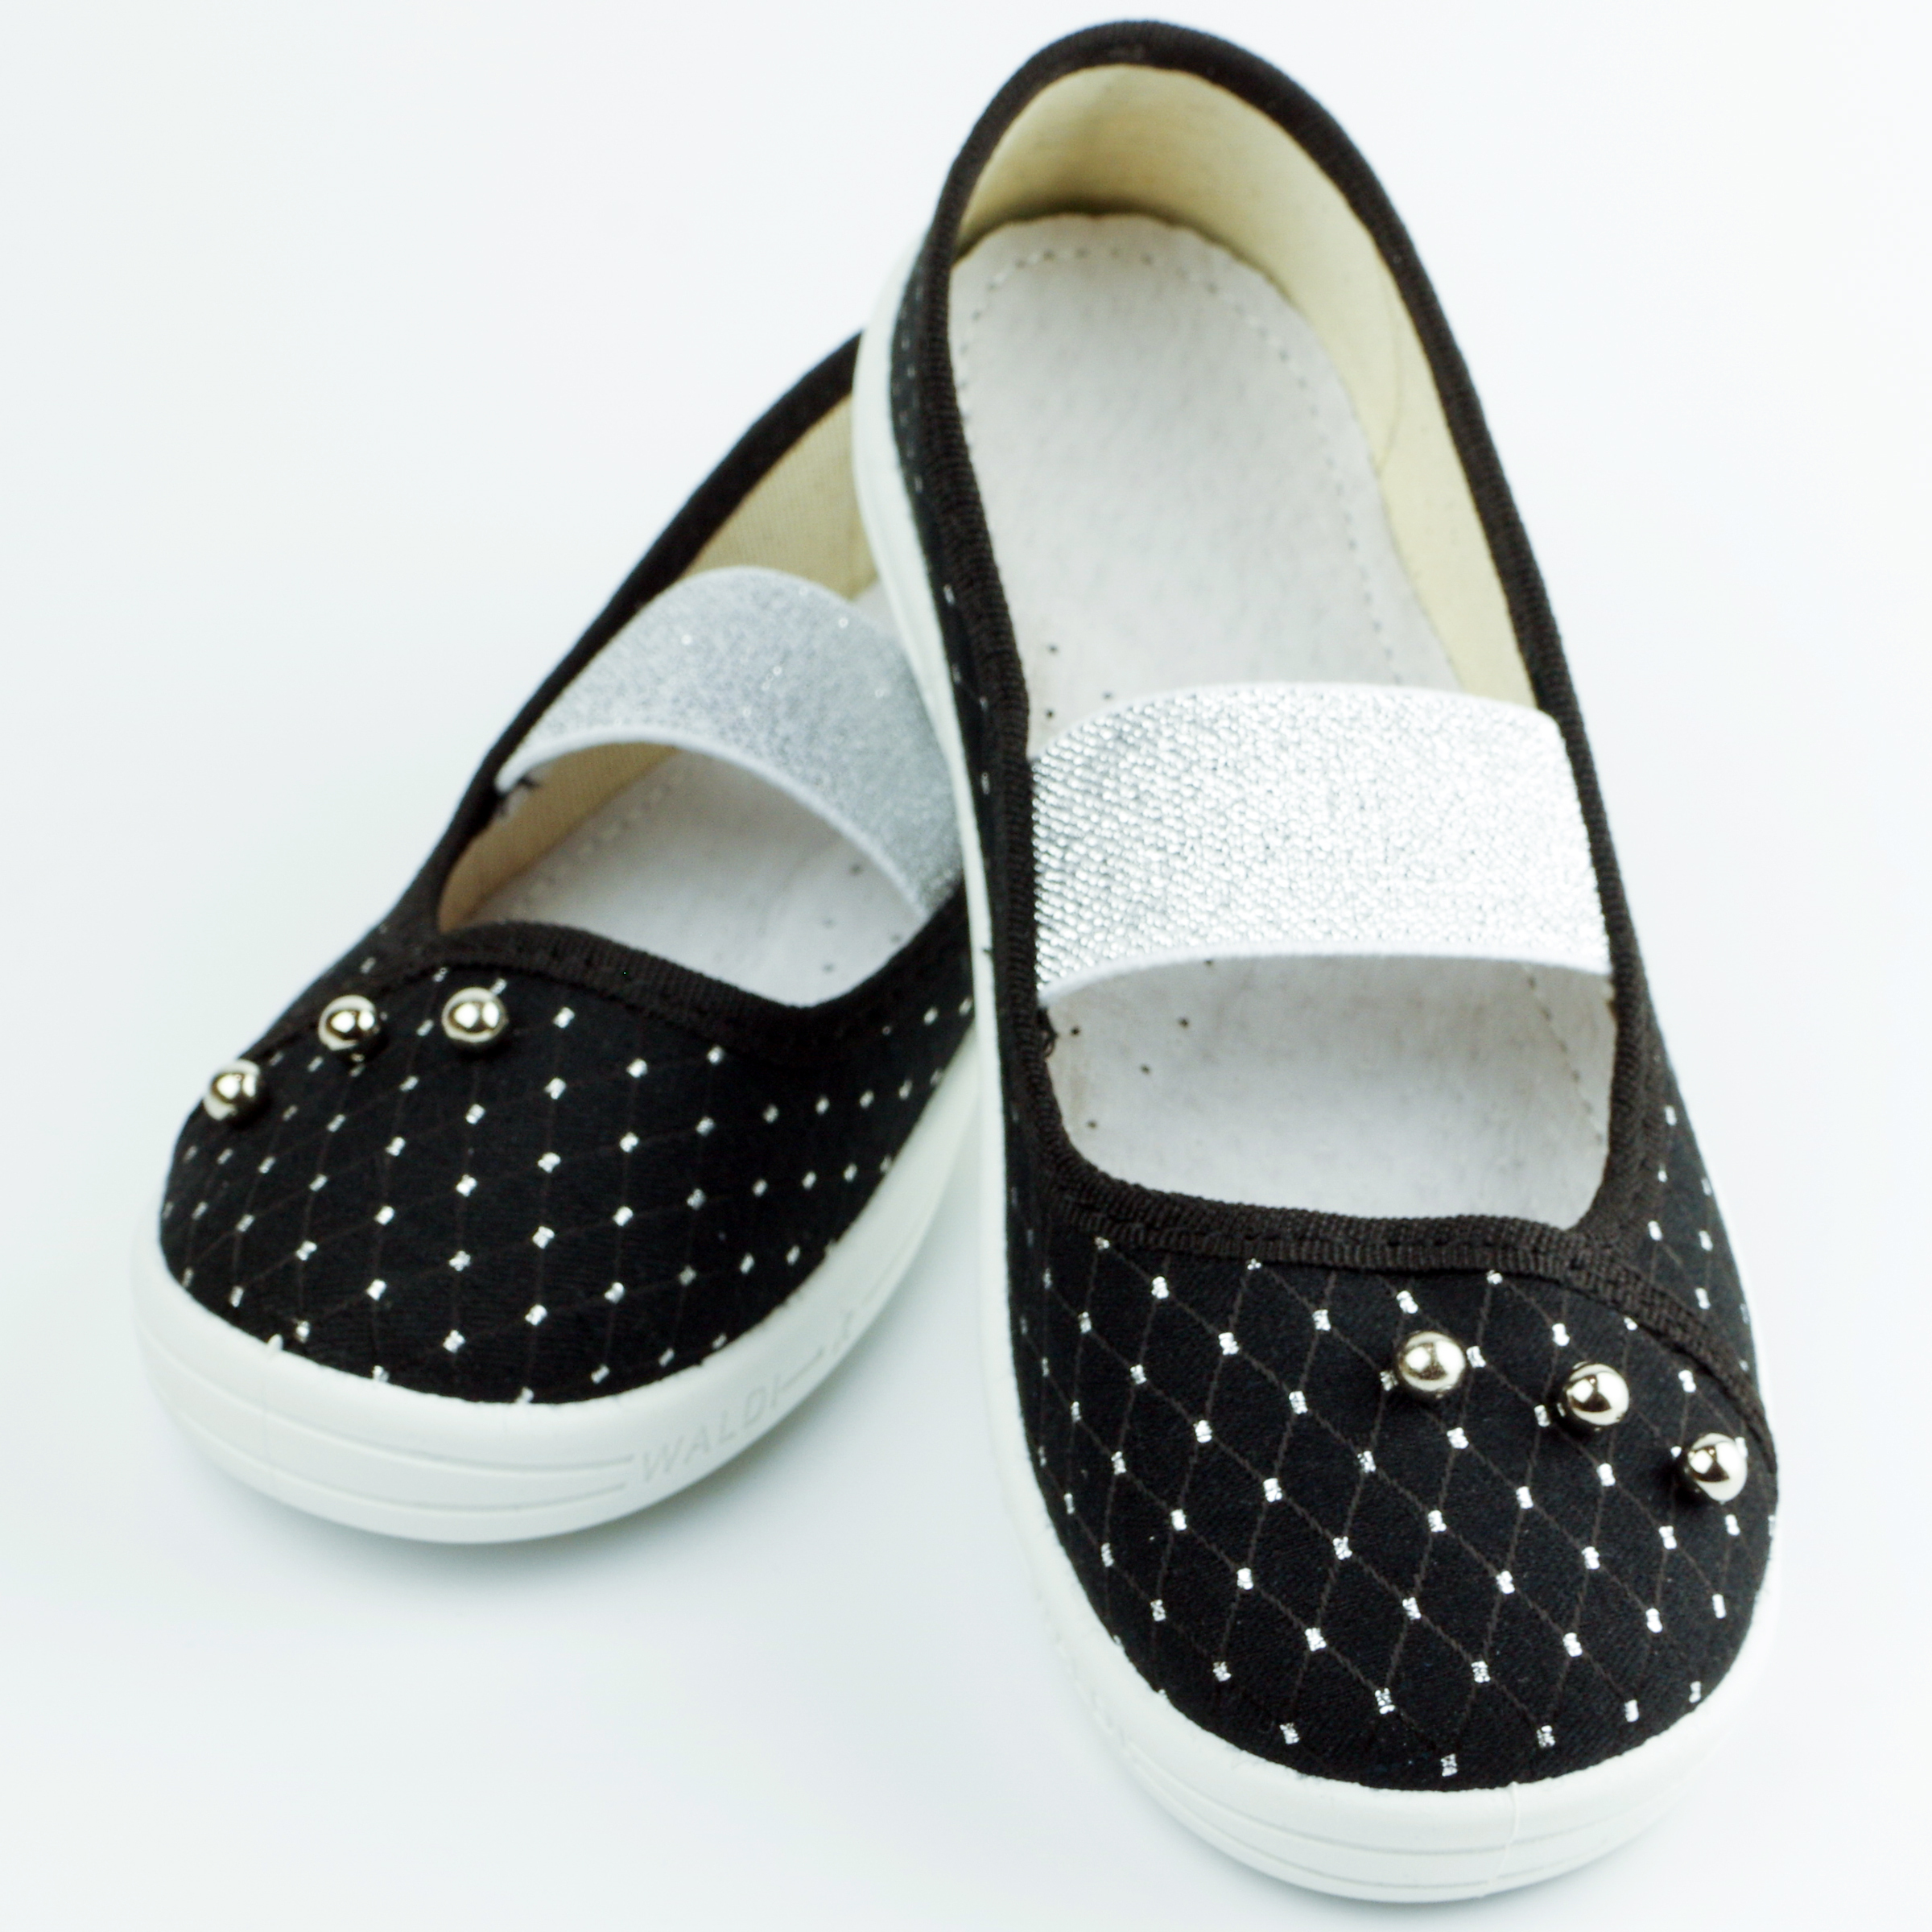 Текстильная обувь для девочек Тапочки Жемчужина (2129) цвет Черный 27-34 размеры – Sole Kids. Фото 2